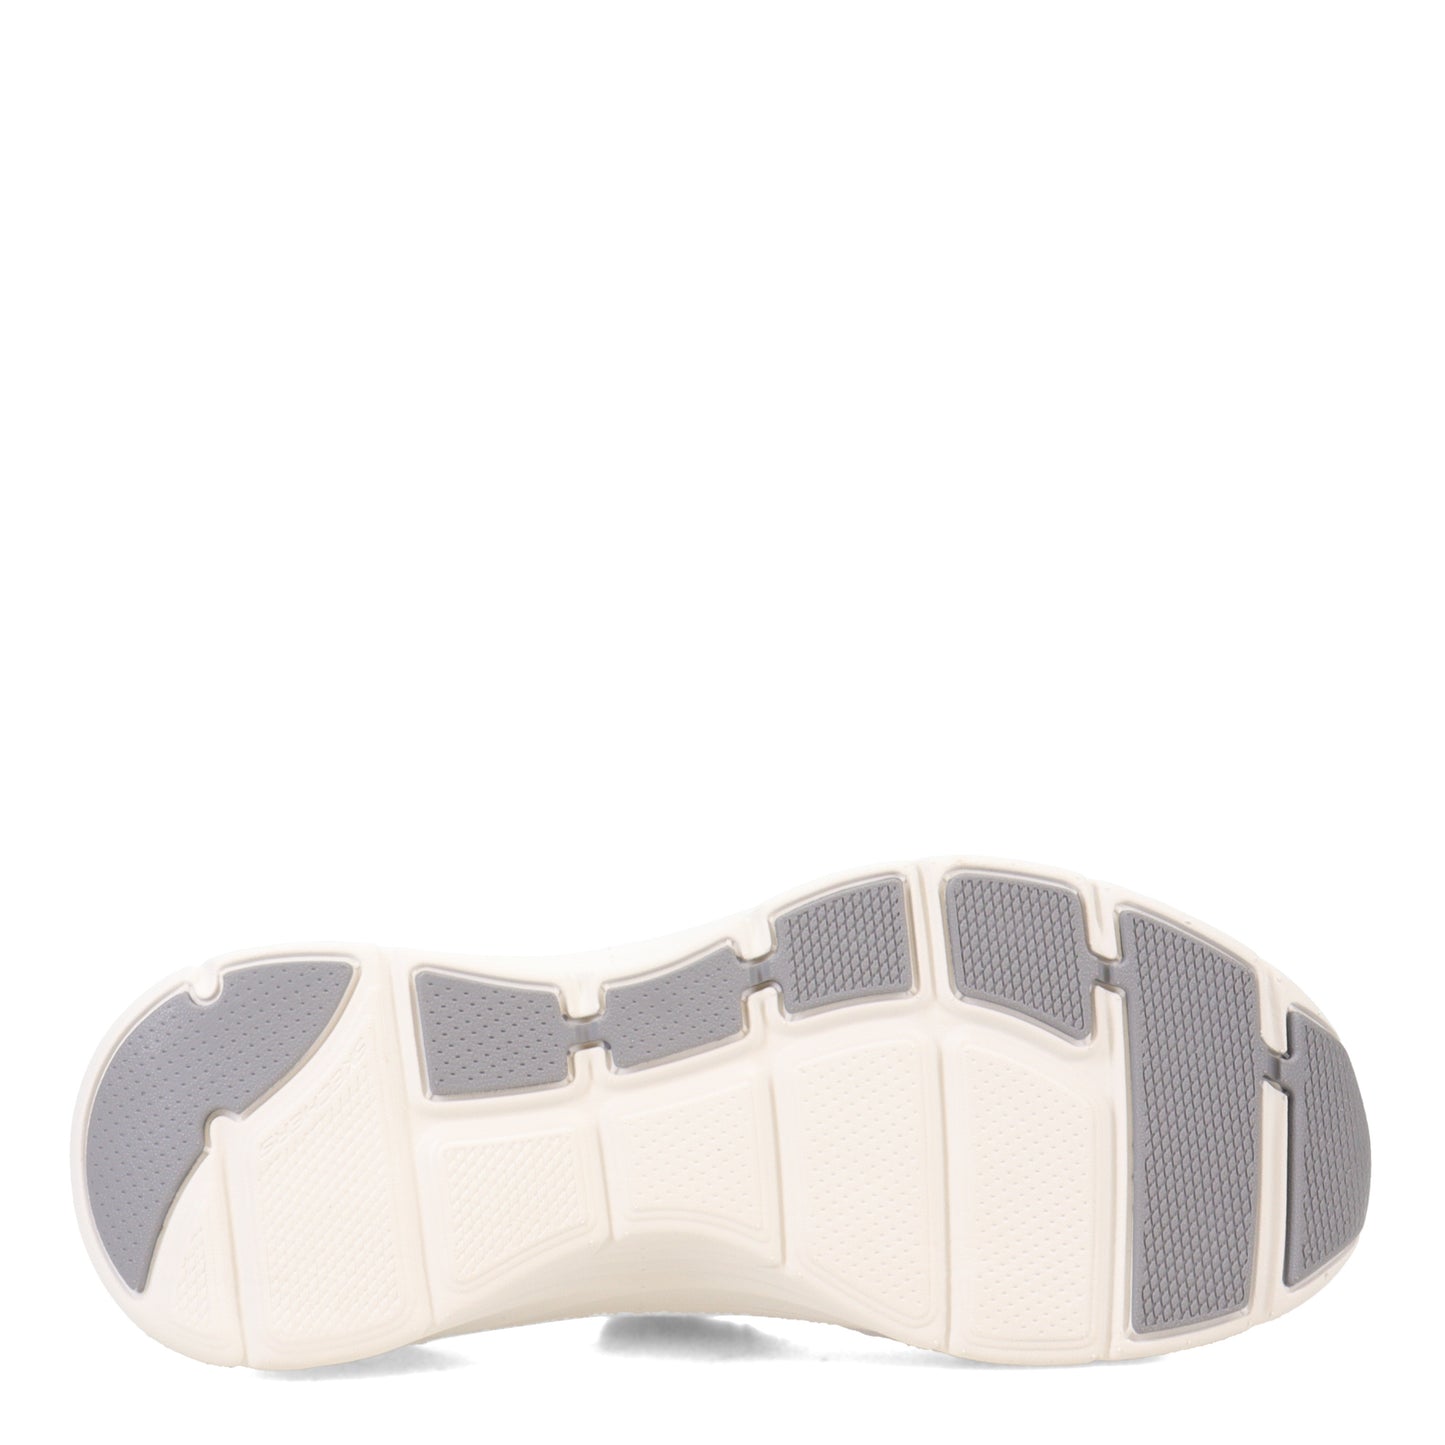 Peltz Shoes  Women's Skechers Relaxed Fit: Arch Fit D'Lux - Key Journey Sneaker GREY 149684-GRY